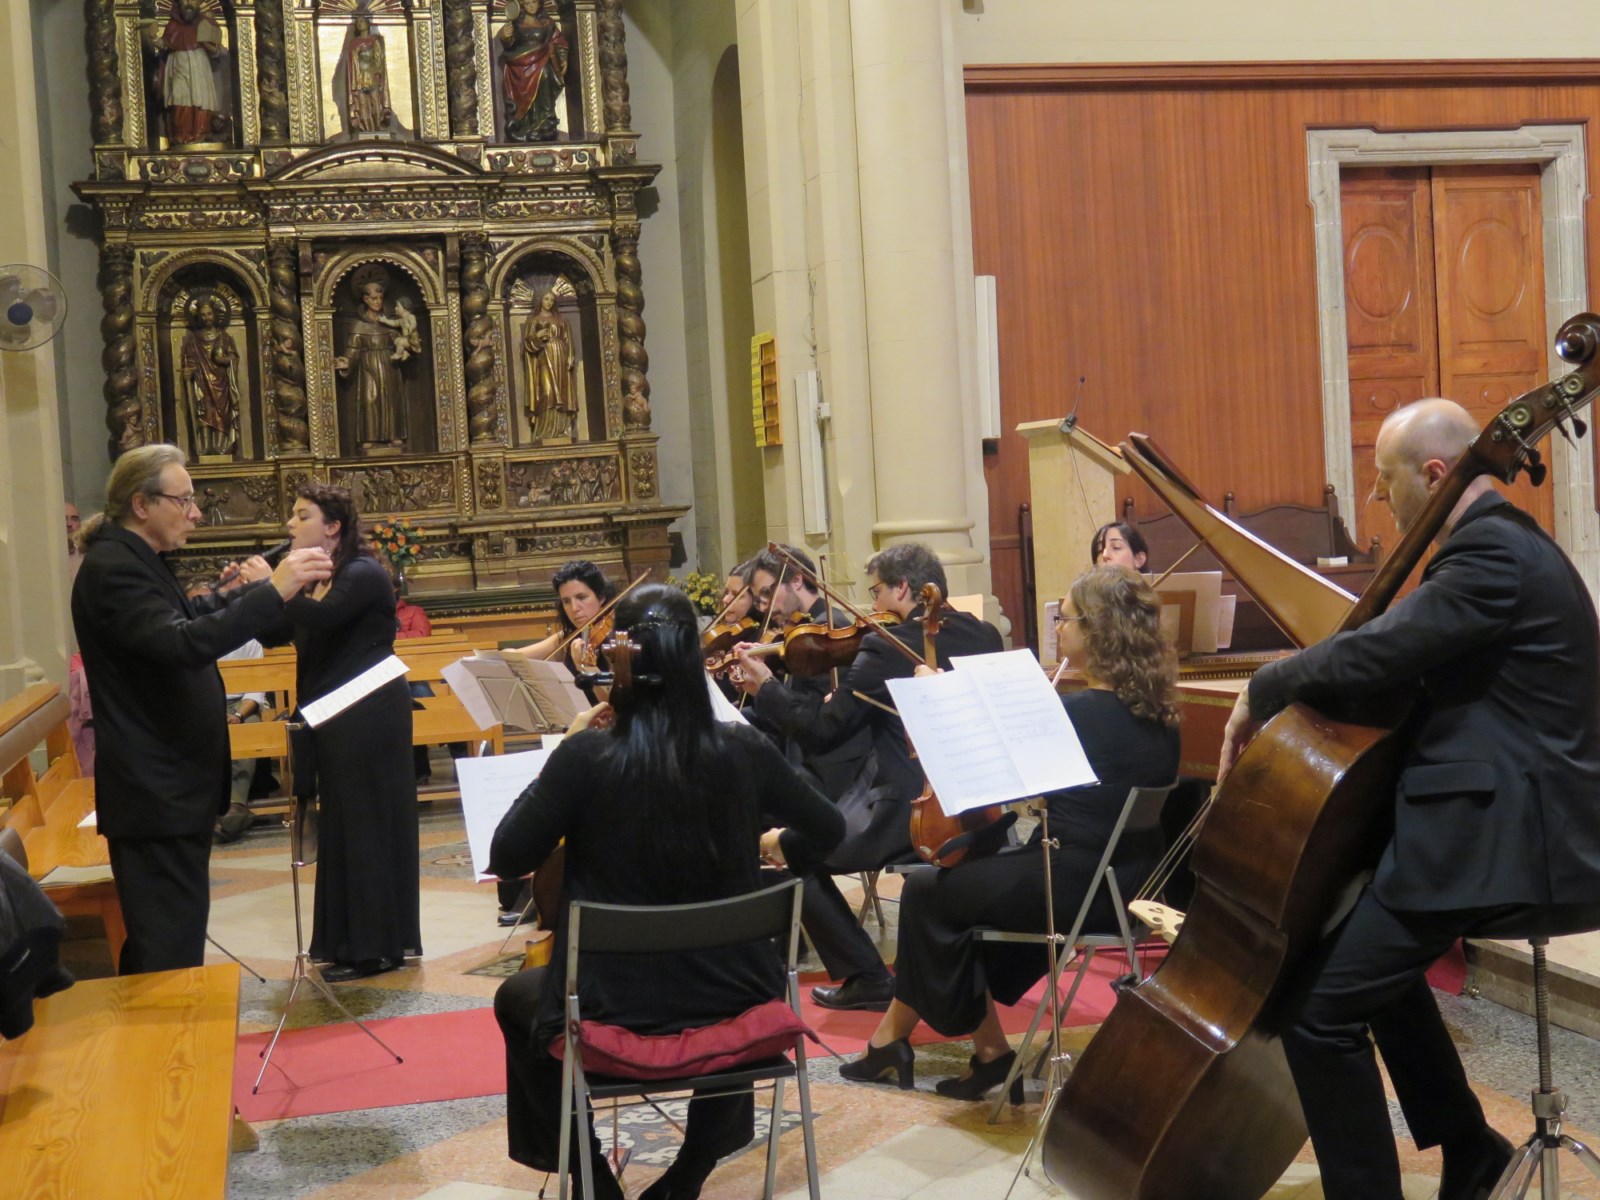 Diumenge 23, església parroquial: Concert de Sant Andreu amb Camerart-Orquestra del Maresme